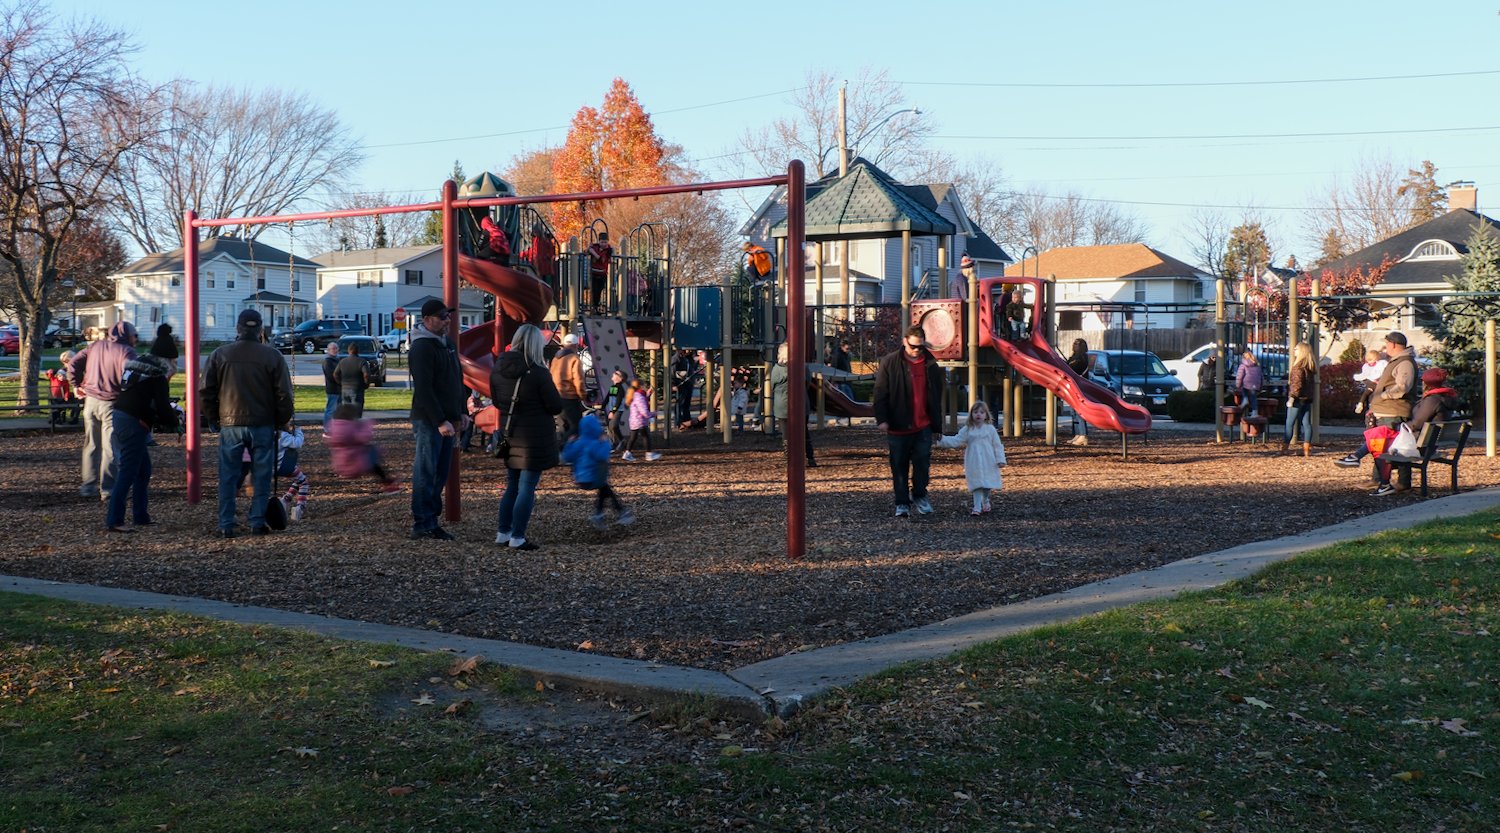 Children playing on playground.